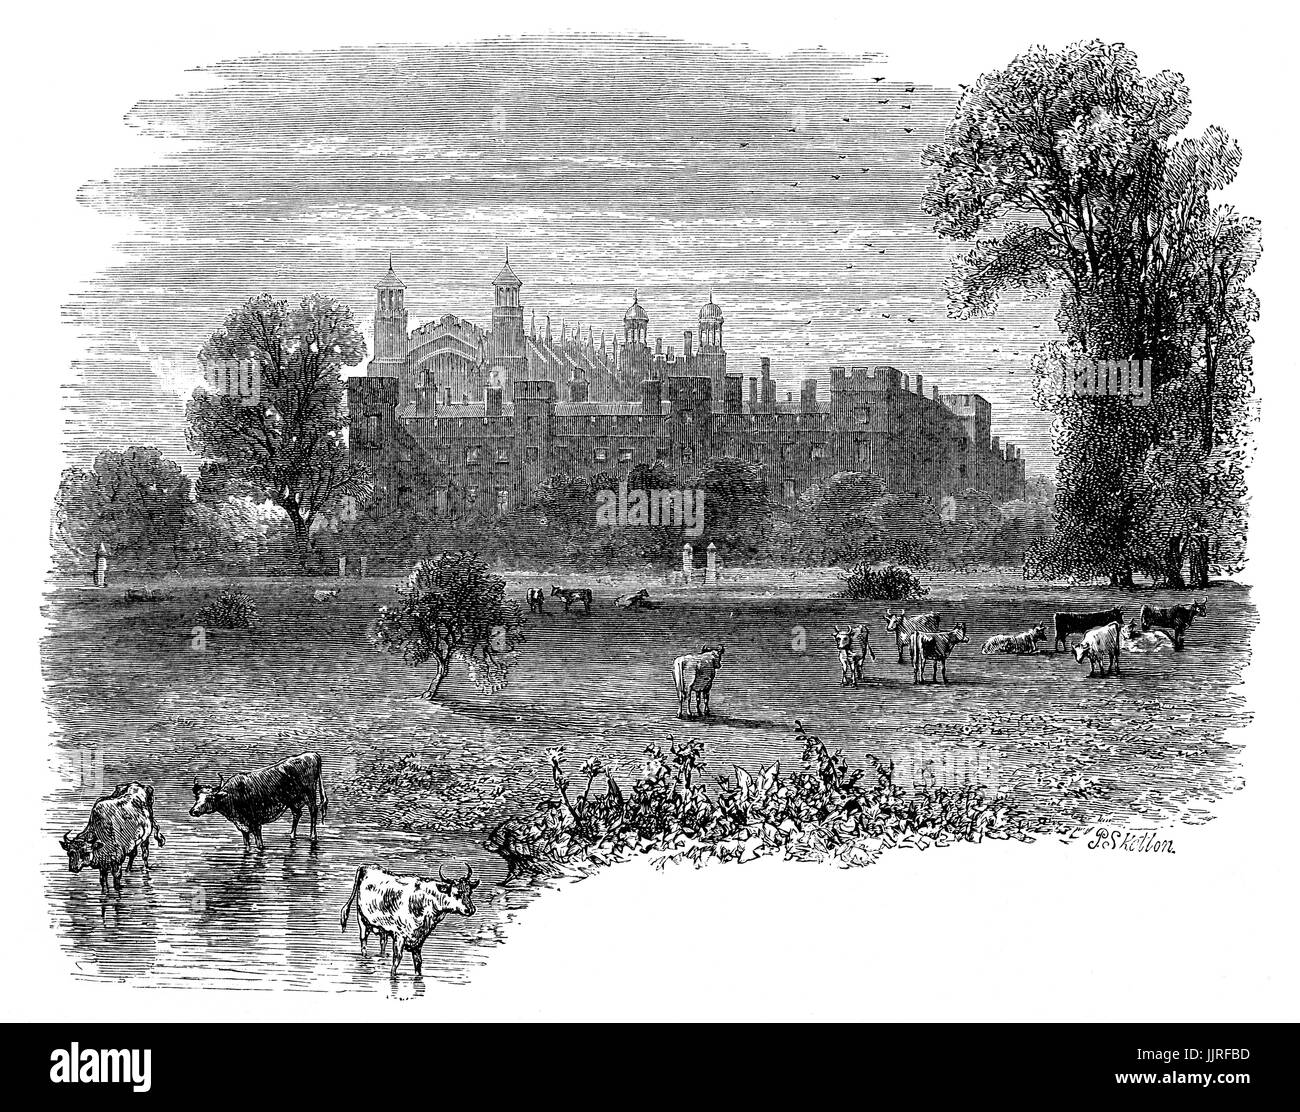 1870 : une vue de la Tamise d'Eton College, un internat pour garçons indépendante fondée en 1440 par le Roi Henry VI comme 'le King's College Notre Dame de l'Eton en plus Wyndsor', Eton, Berkshire, près de Windsor, en Angleterre. Banque D'Images